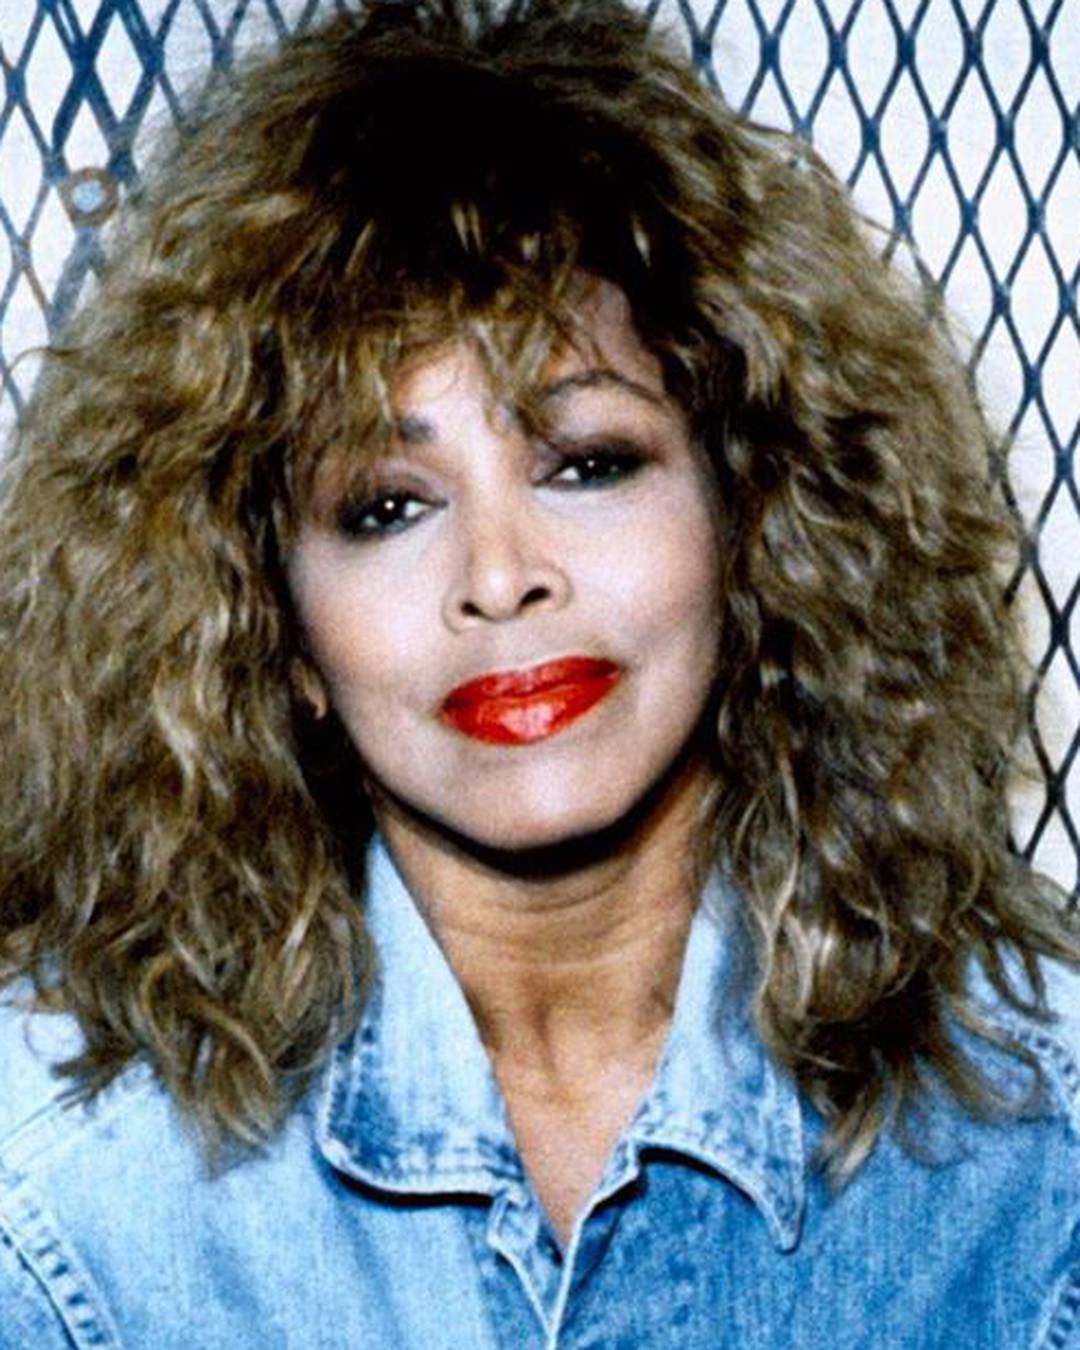 Preminula je Tina Turner